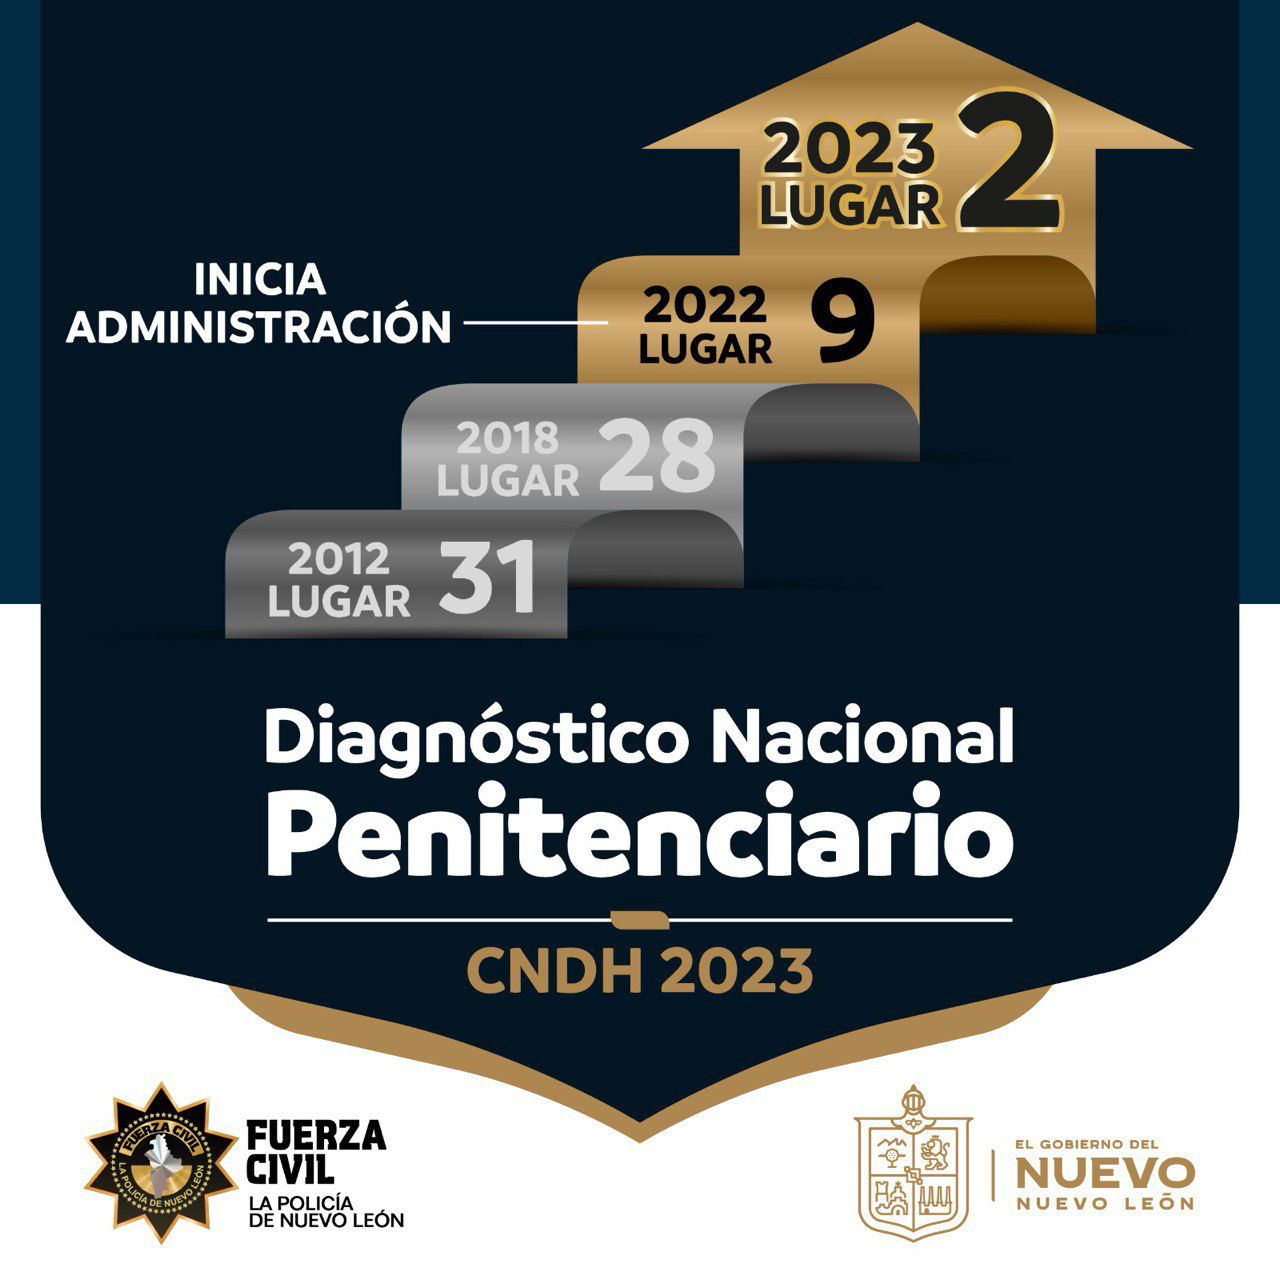 Obtiene Nuevo León segundo lugar en calificación penitenciaria, segun la CNDH